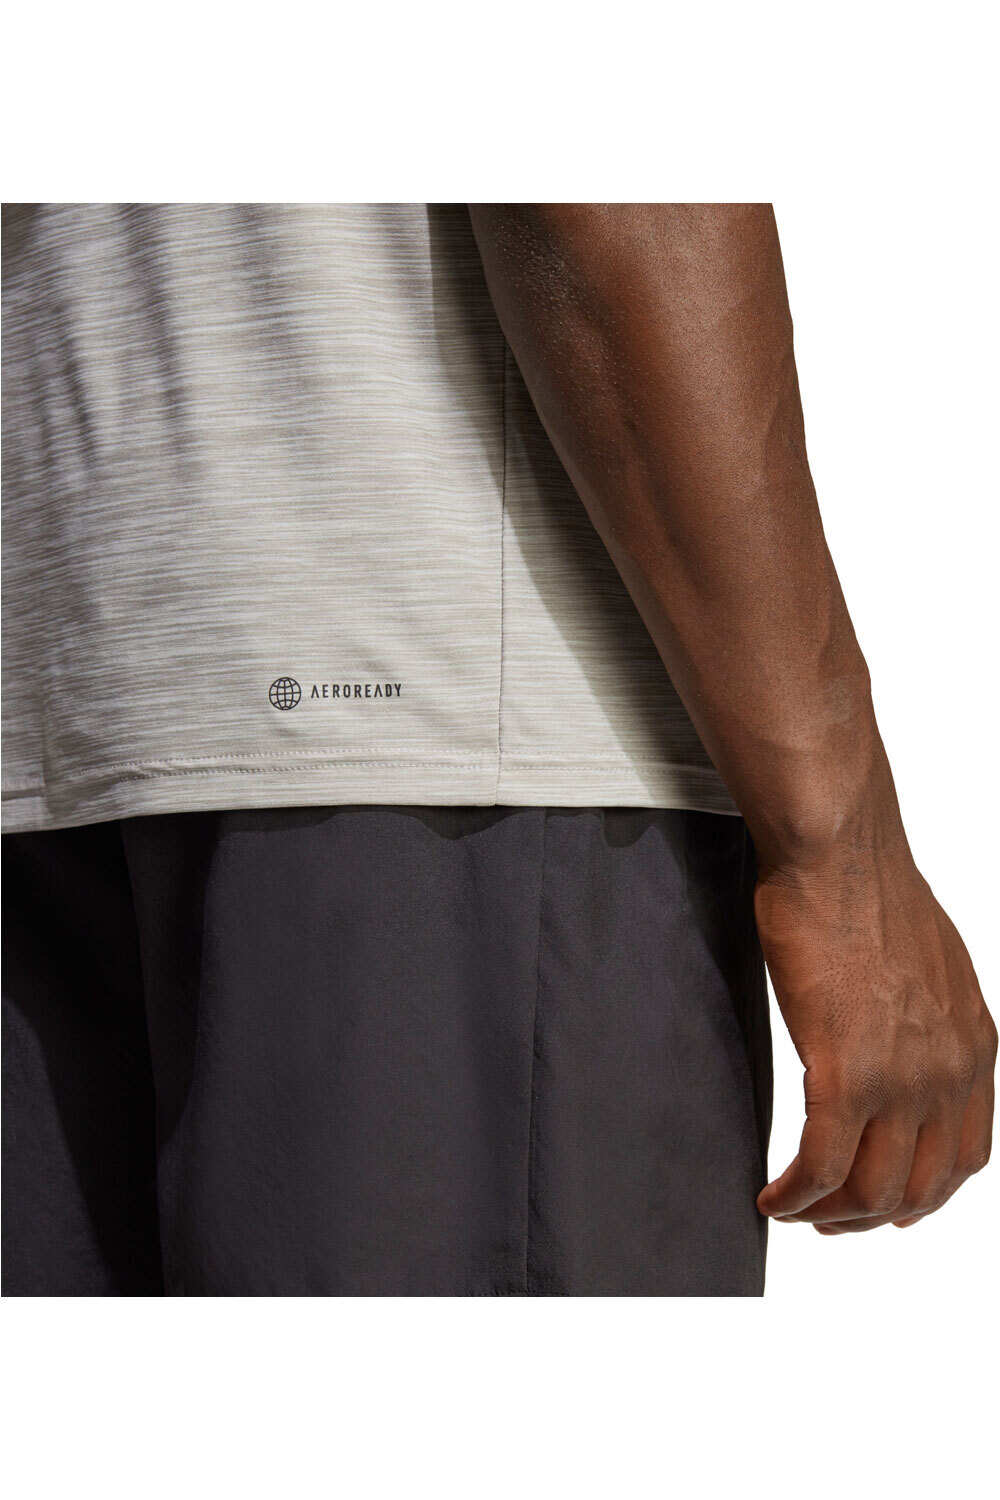 adidas camiseta fitness hombre TR-ES STRETCH T vista detalle